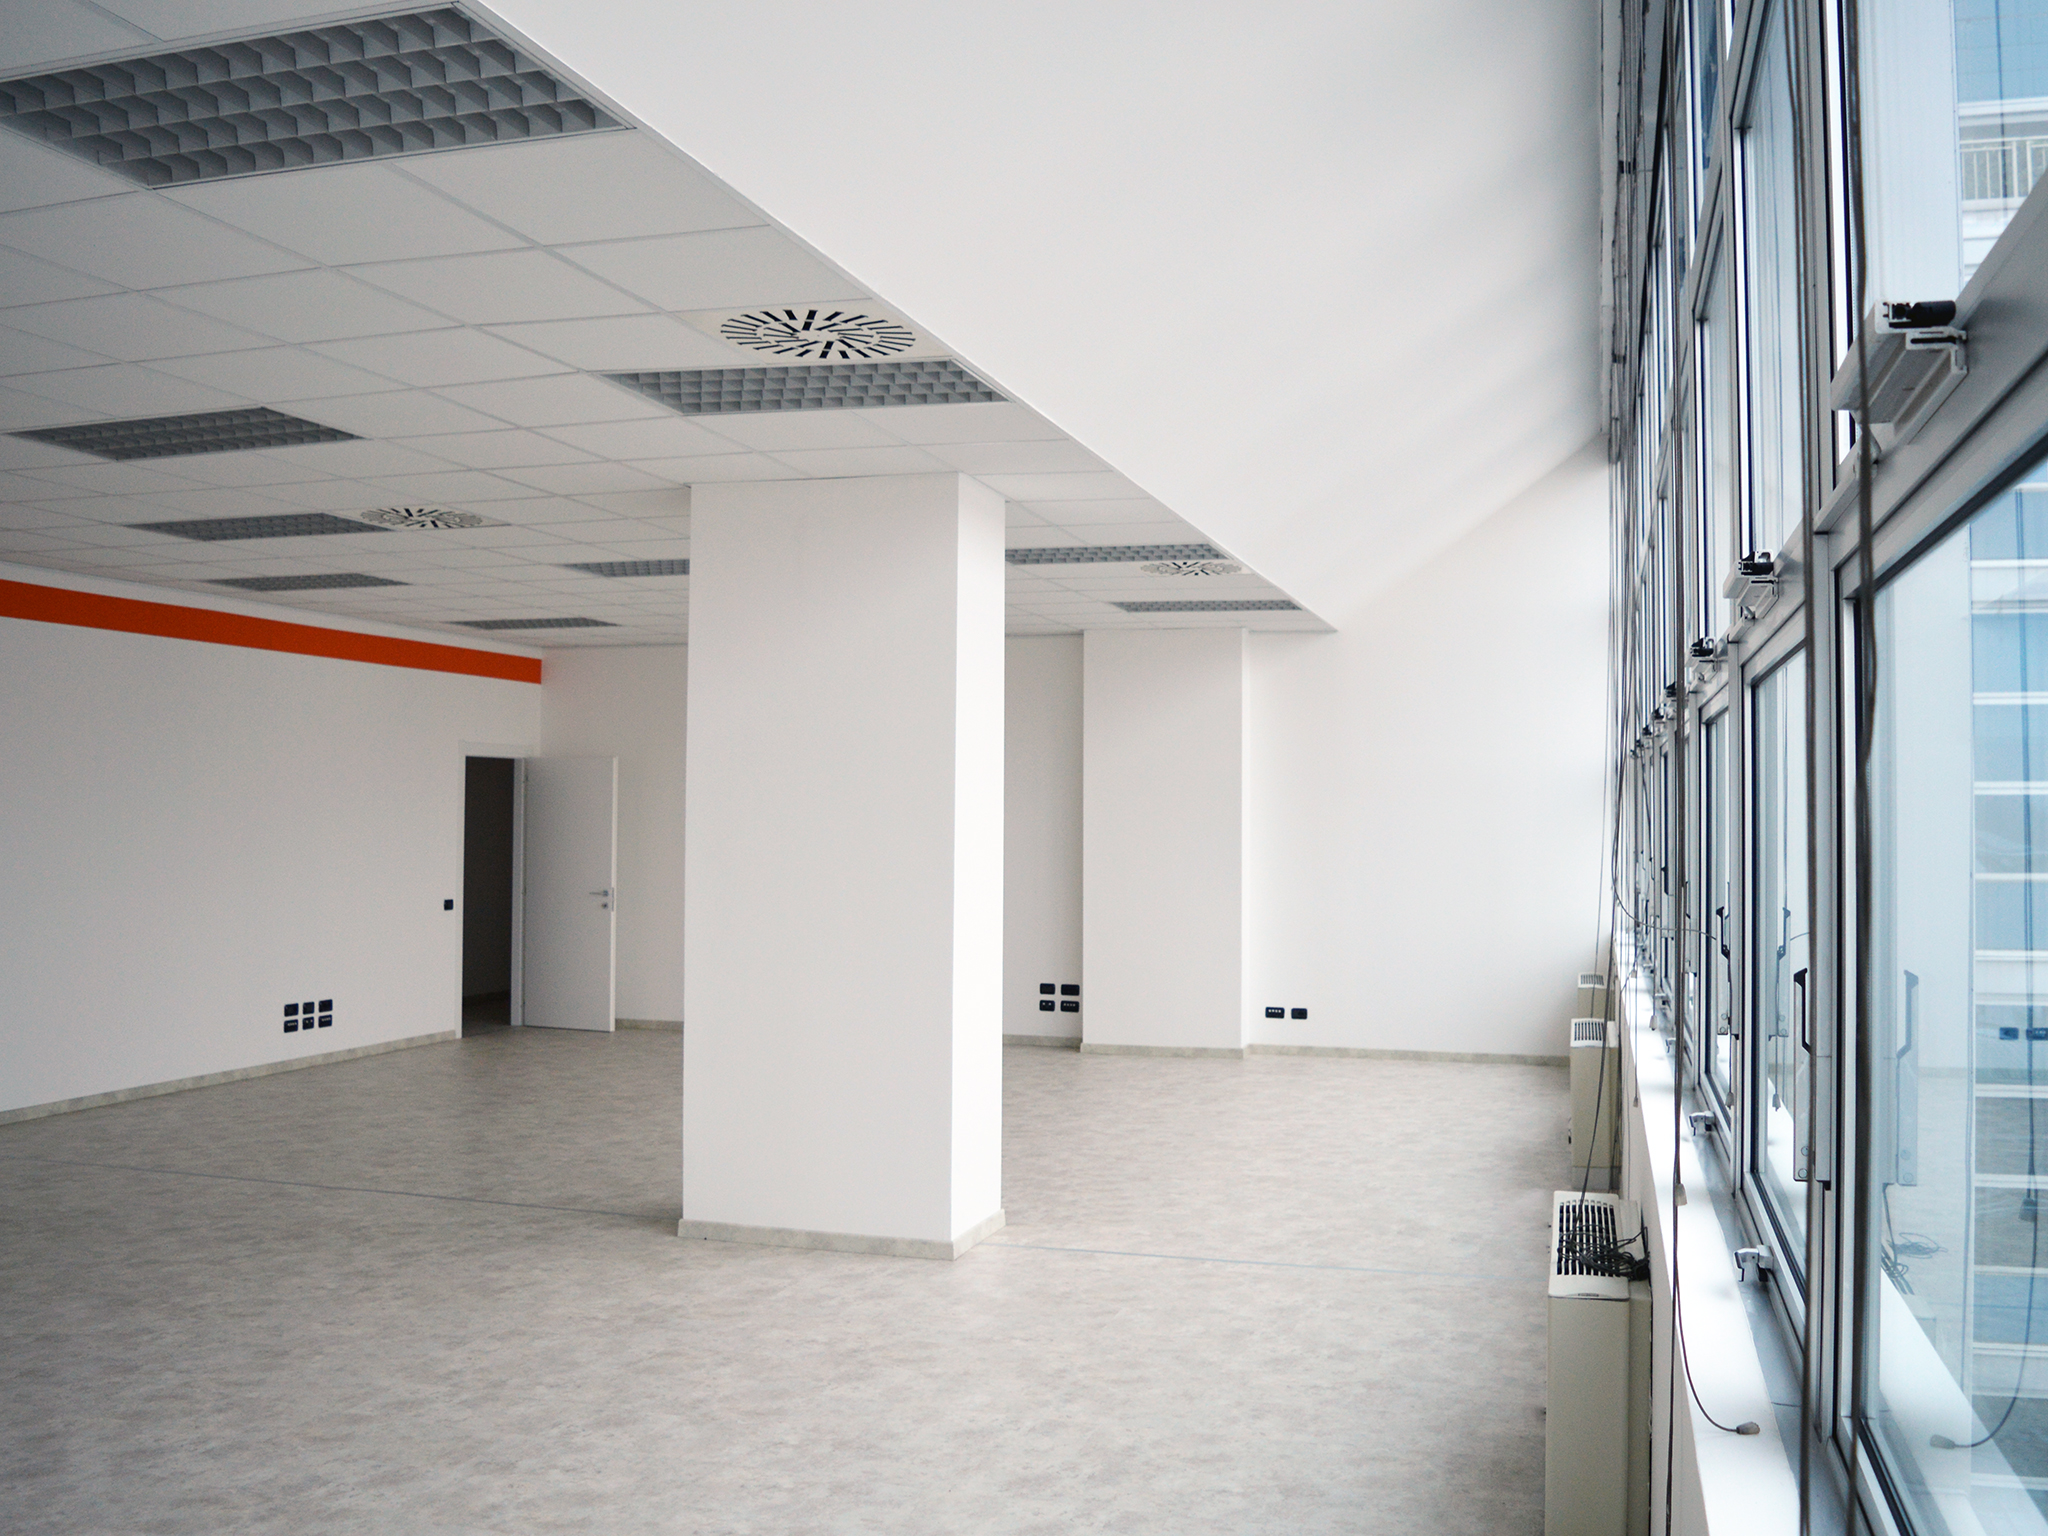 Office to rent in Milan 750 m² (8073 ft²) third floor